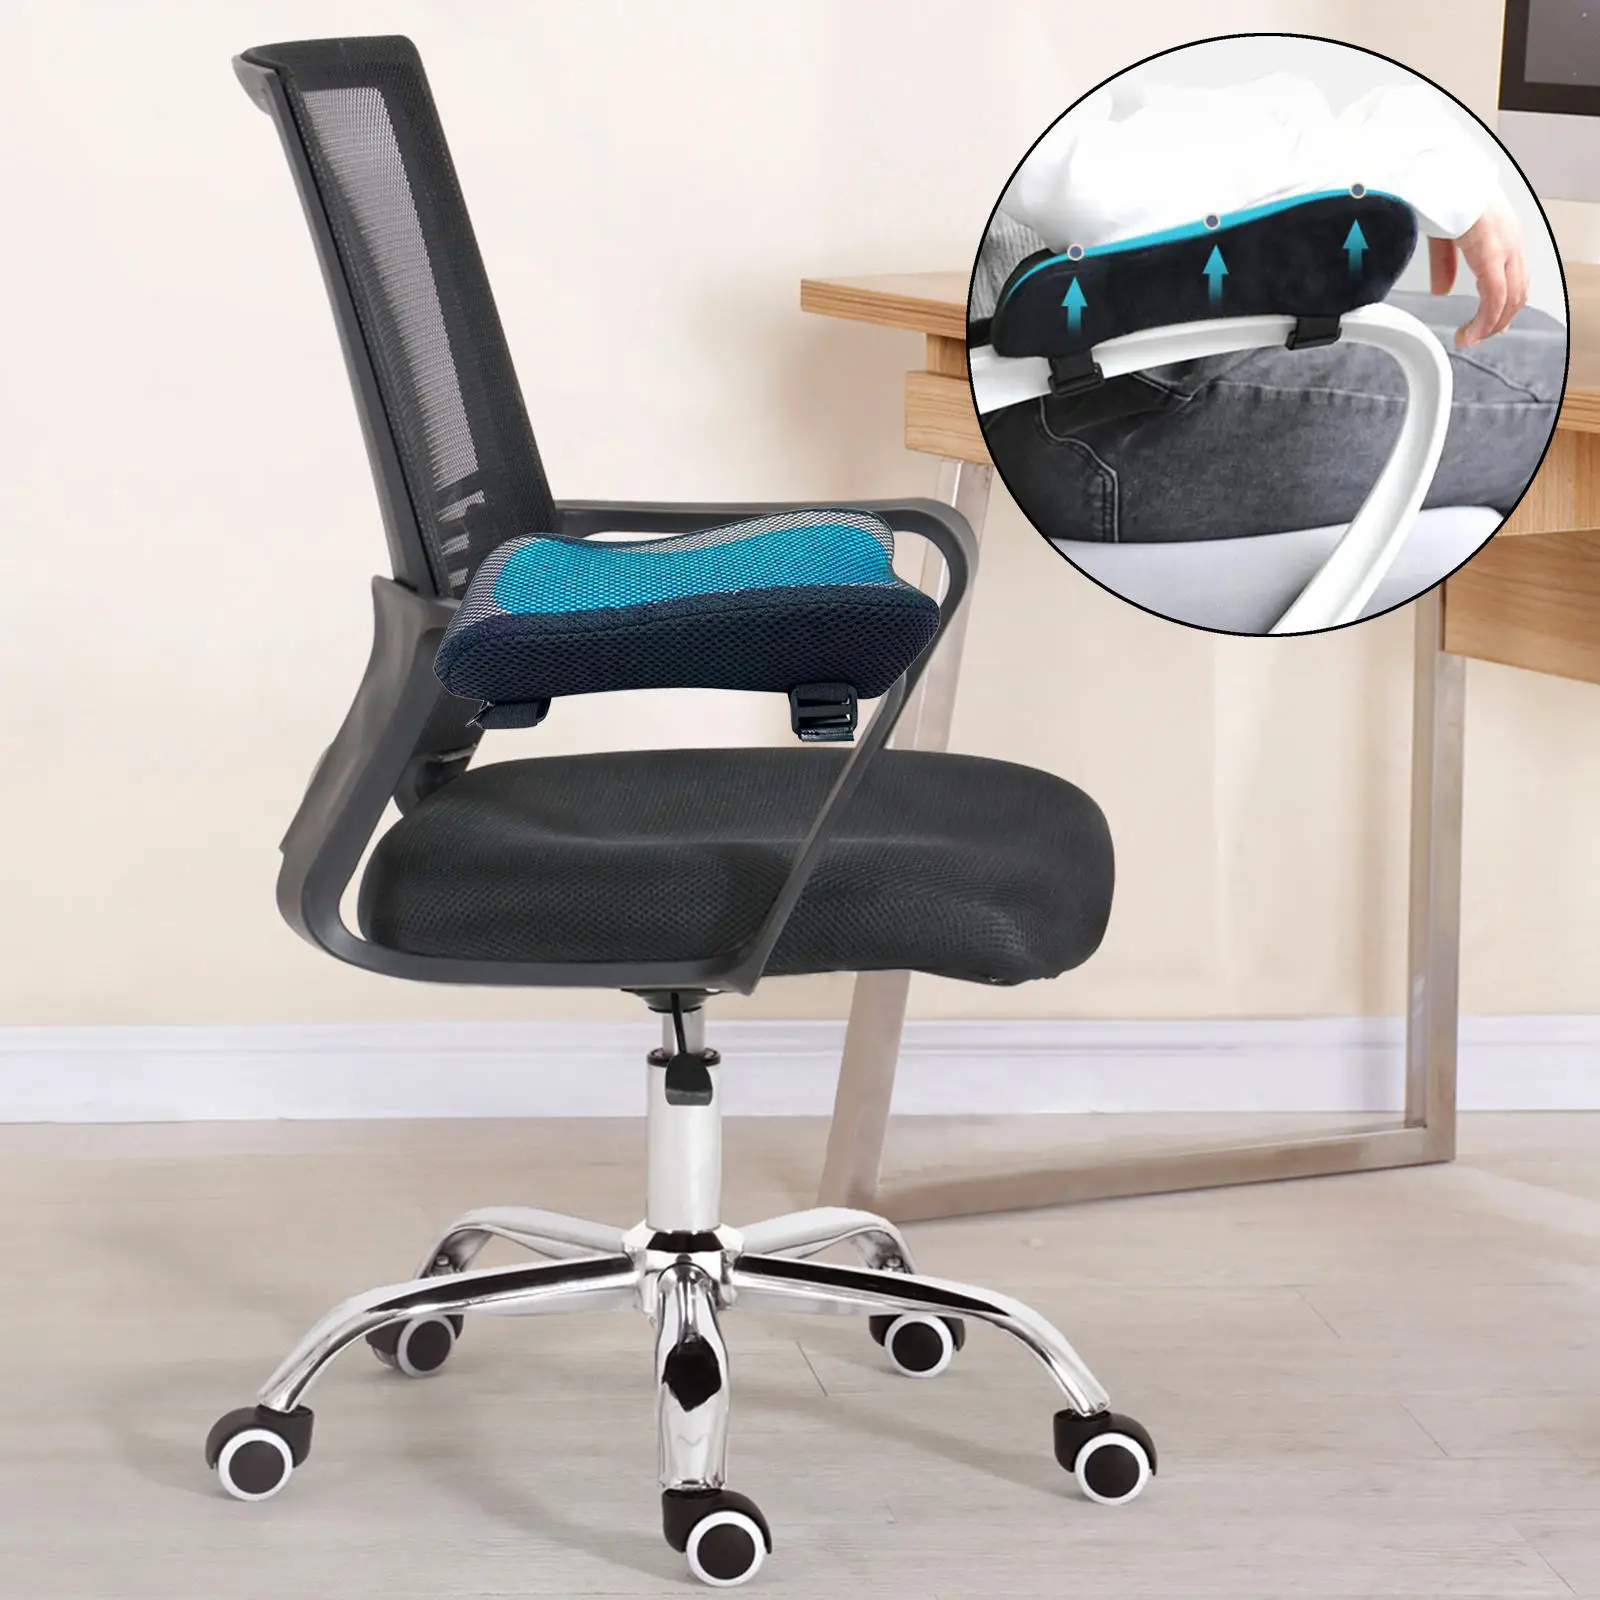 Удобная подушка для офисного кресла подлокотник из полиэфирного волокна с